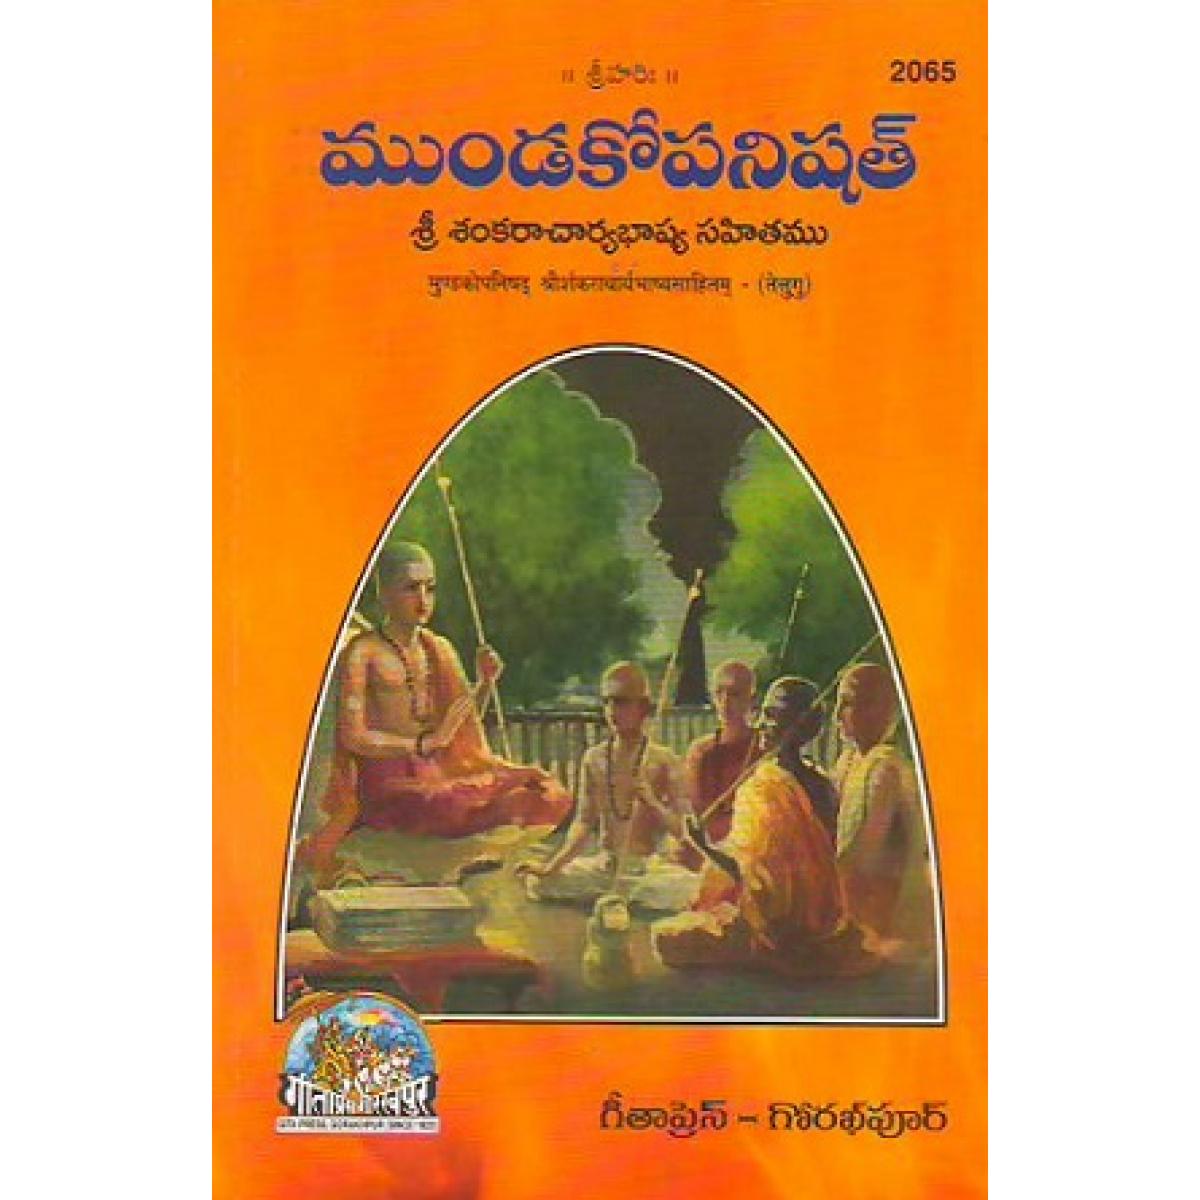 SANATAN  Mundakopanishad Shri Shankaracharya Bhashyasahitam (Commentary by Shankaracharya, Telugu)